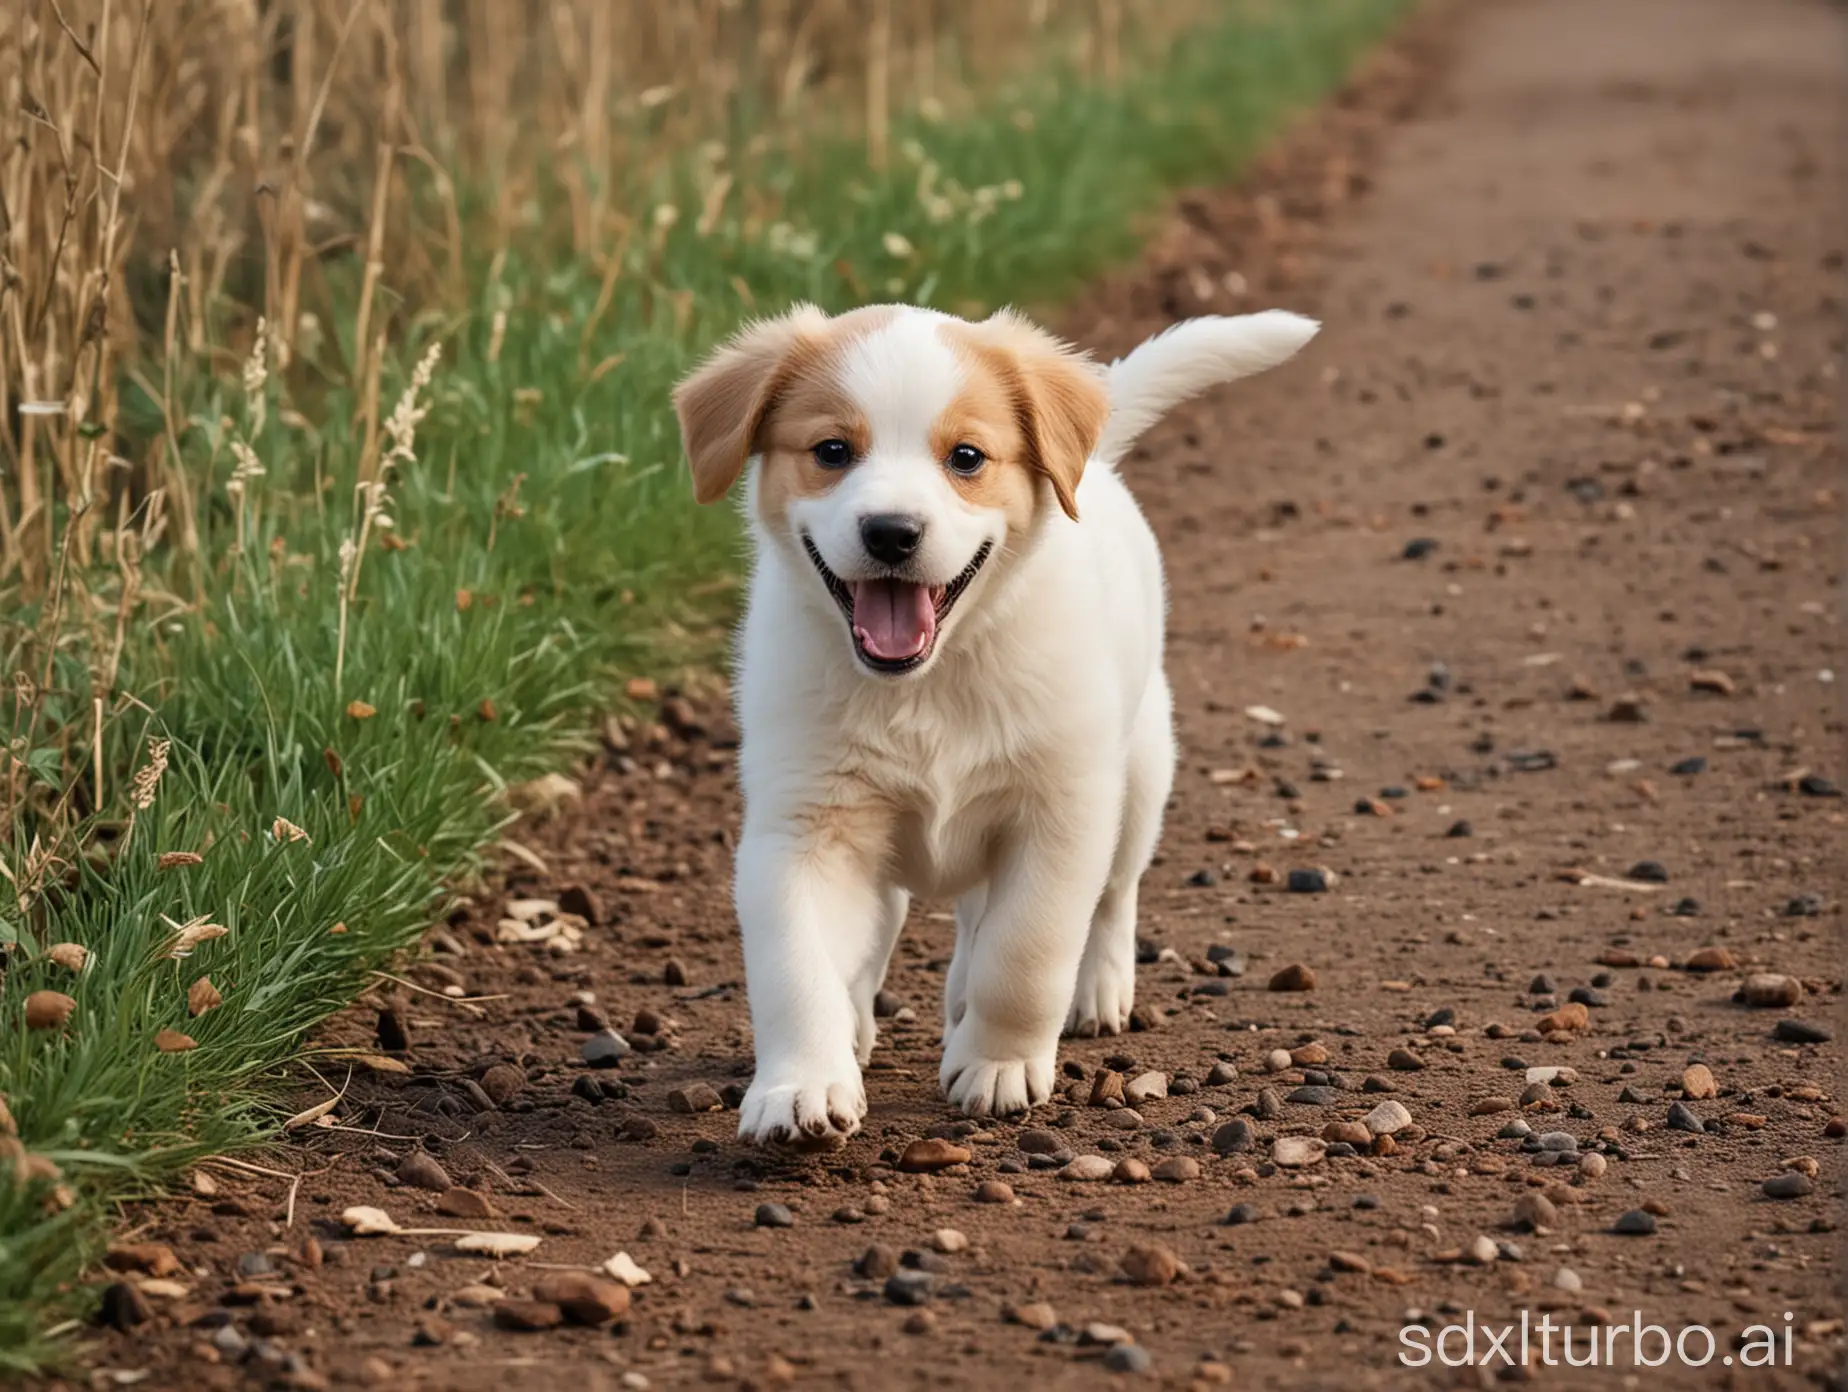 Joyful-Puppy-Walking-Sideways-in-Urban-Setting